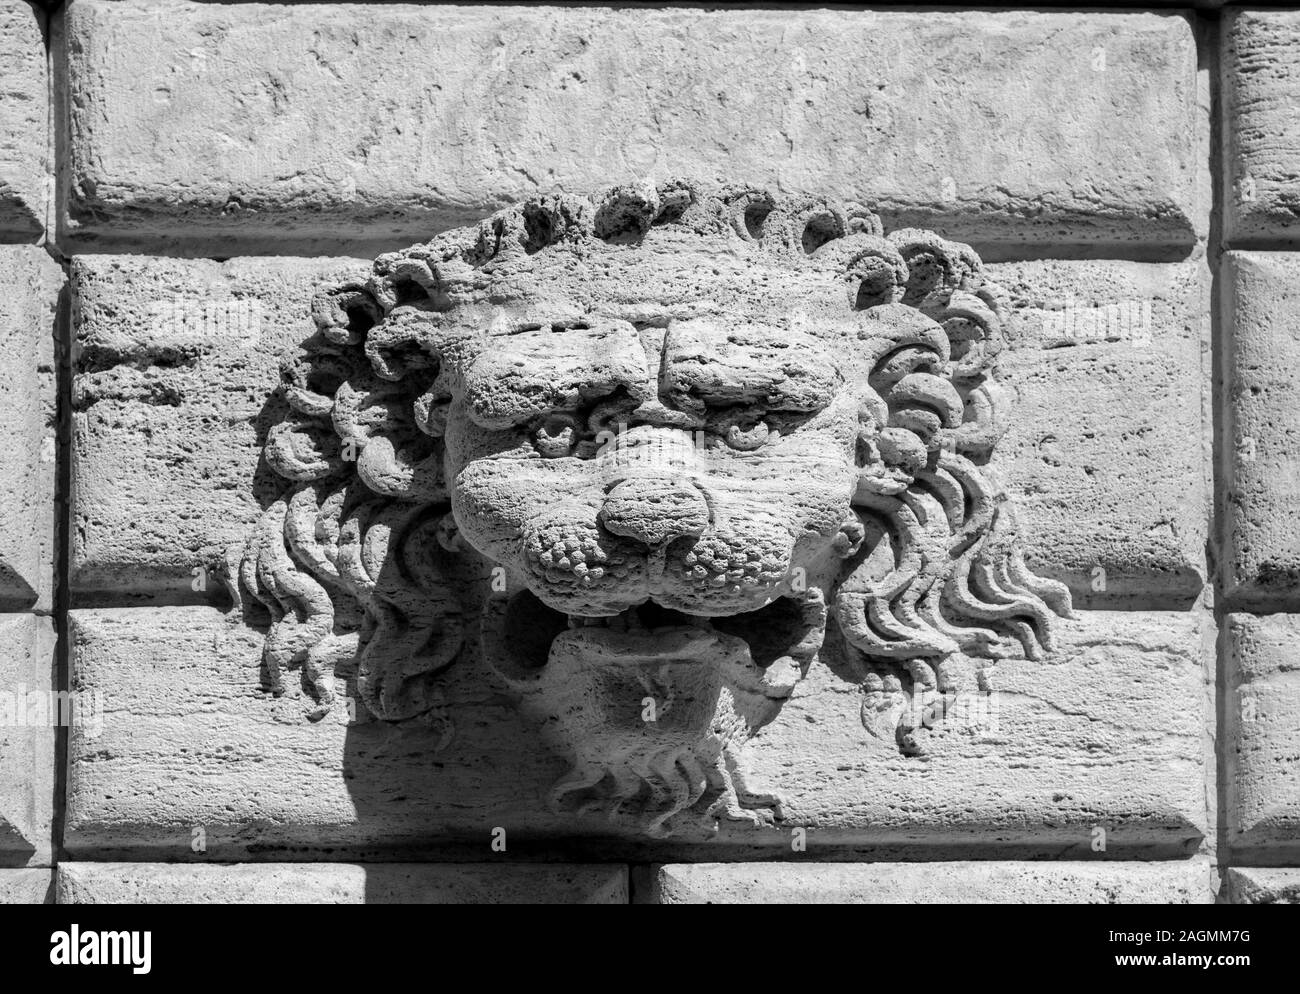 Le lion - un symbole de force et de bravoure - est représenté dans de nombreuses villes de Toscane subjuguées par Florence. Ici sur un bas-relief à Montepulciano. Banque D'Images